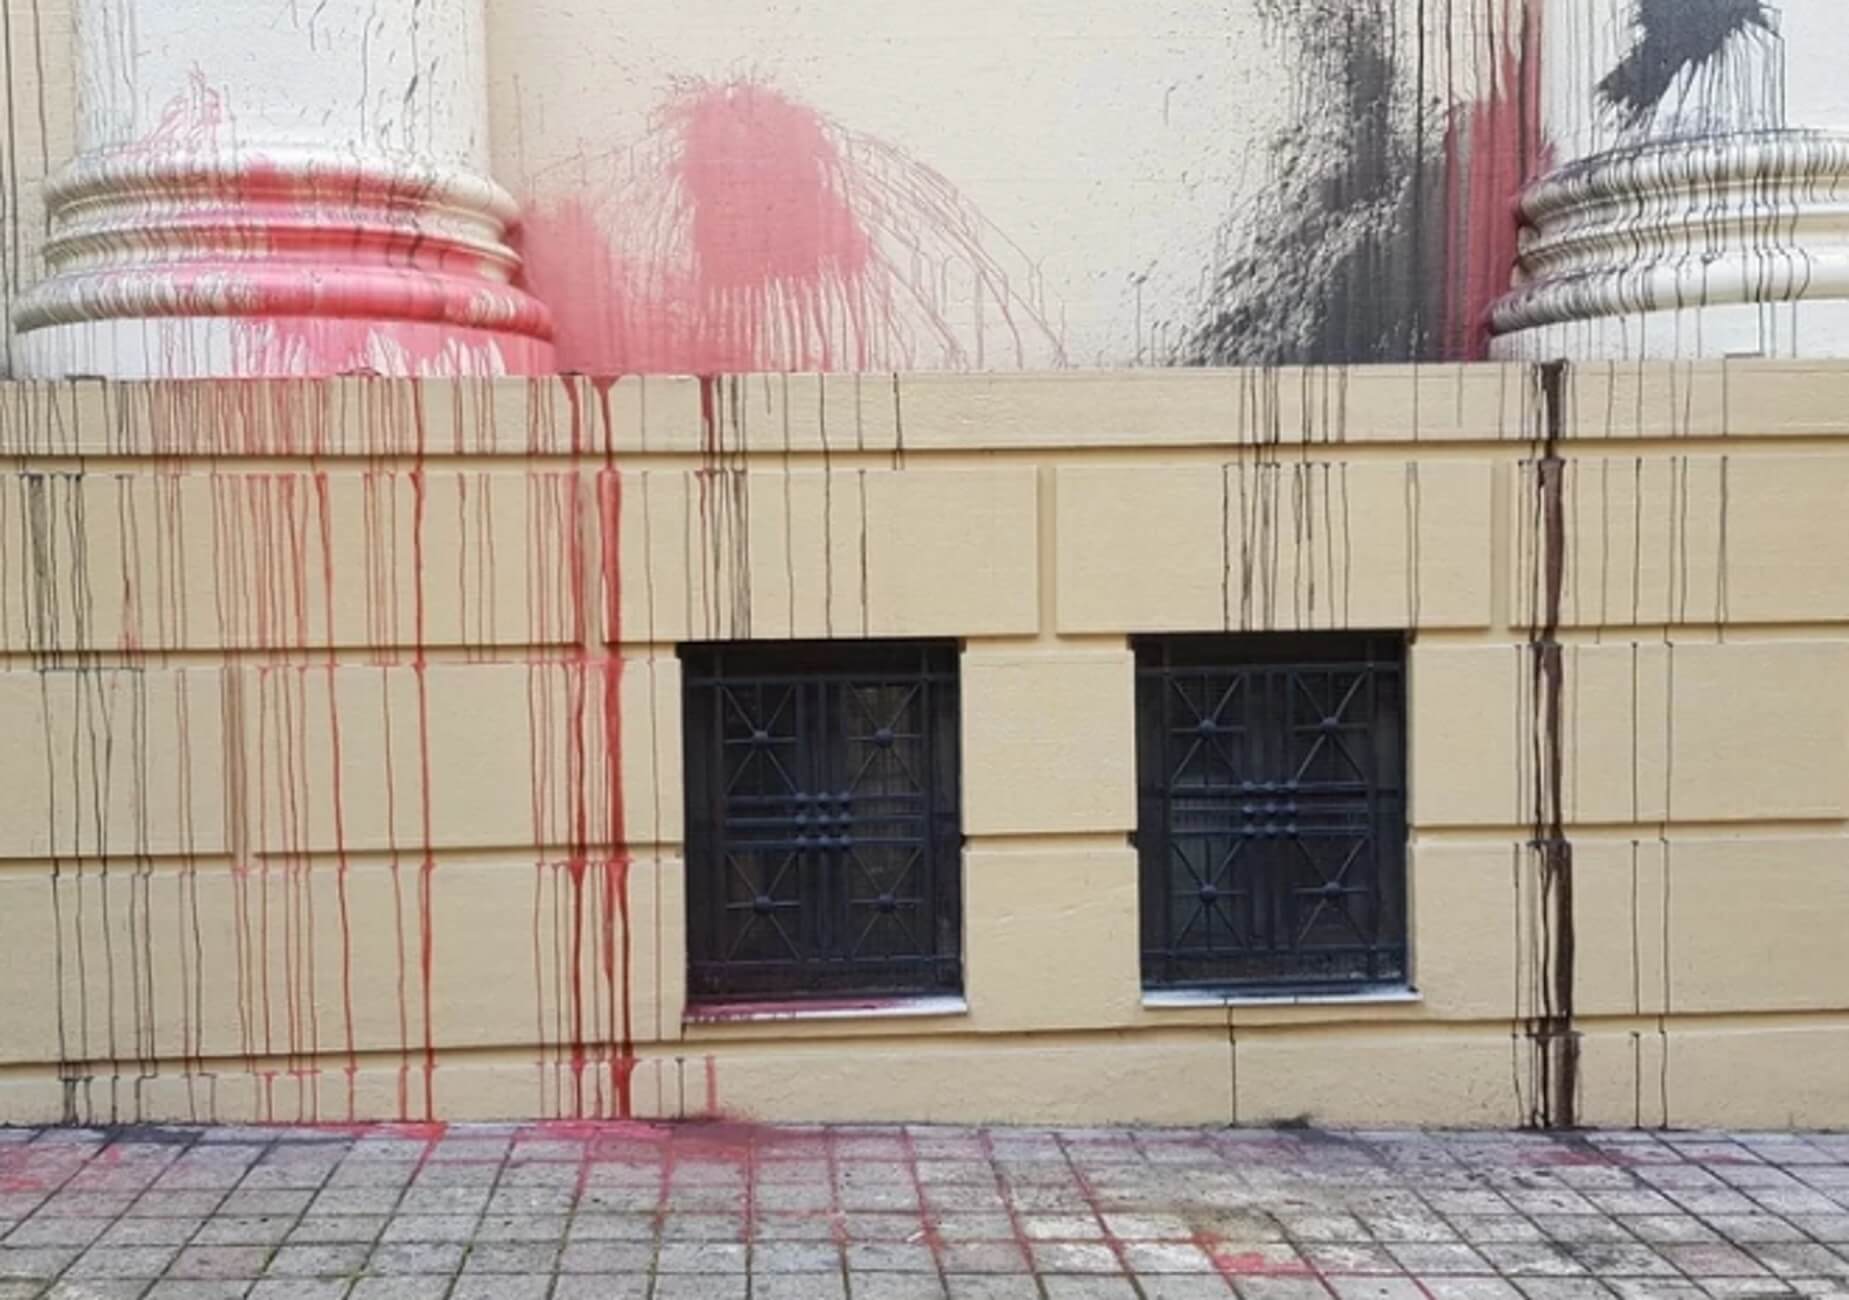 Πάτρα: Καταδρομική επίθεση στο δικαστικό μέγαρο – Έριξαν μαύρες και κόκκινες μπογιές [pics, video]